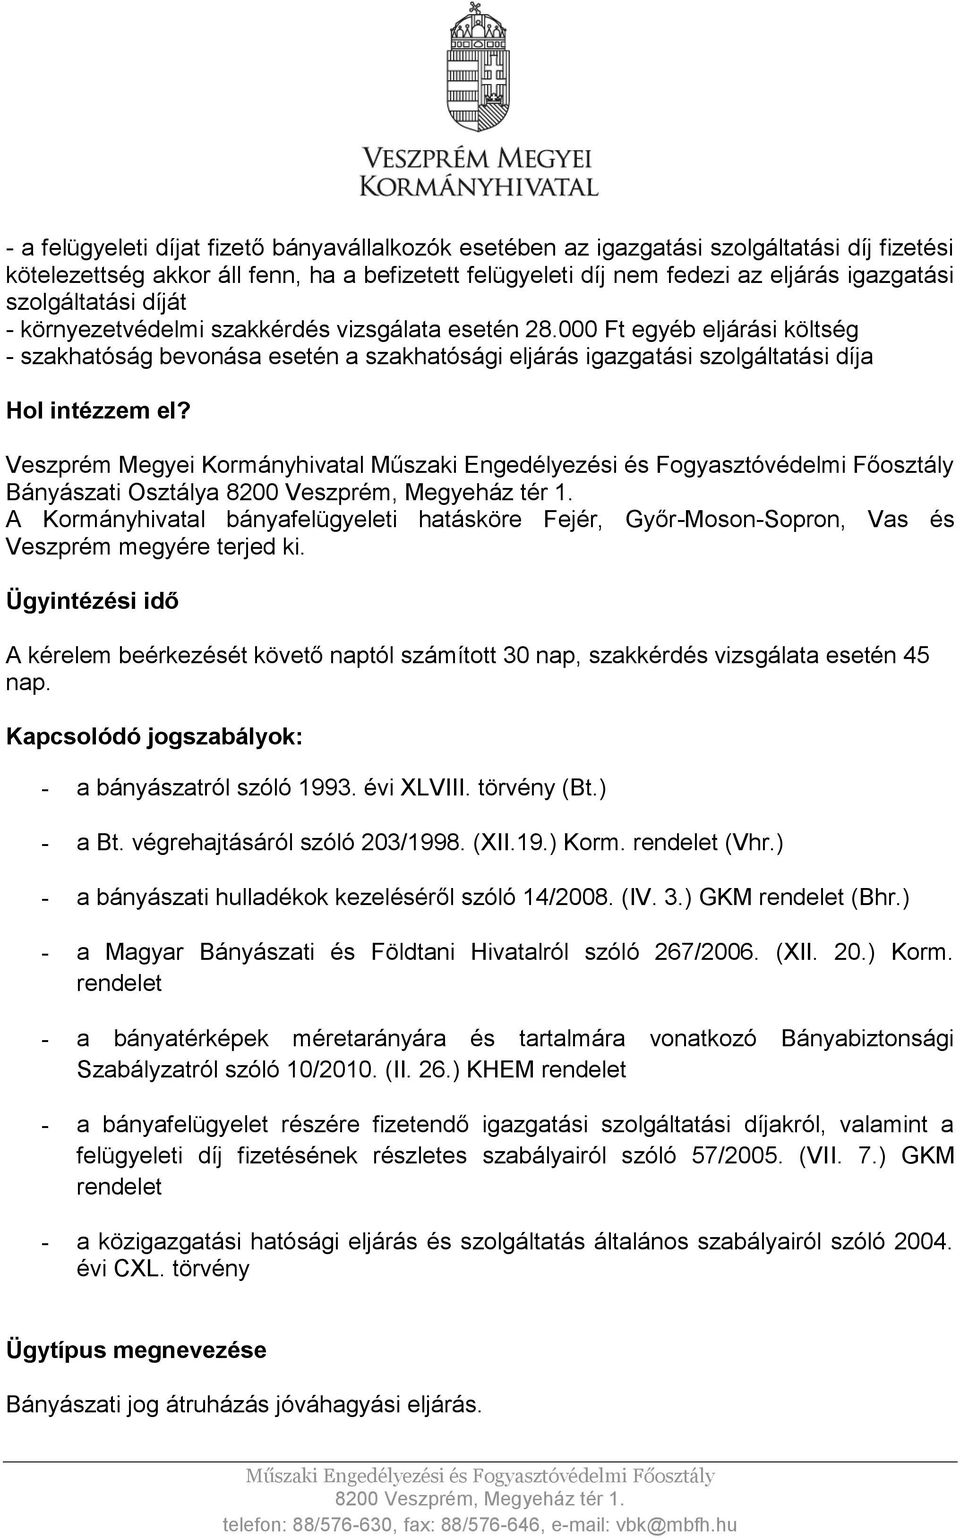 Veszprém Megyei Kormányhivatal Bányászati Osztálya A Kormányhivatal bányafelügyeleti hatásköre Fejér, Győr-Moson-Sopron, Vas és Veszprém megyére terjed ki.